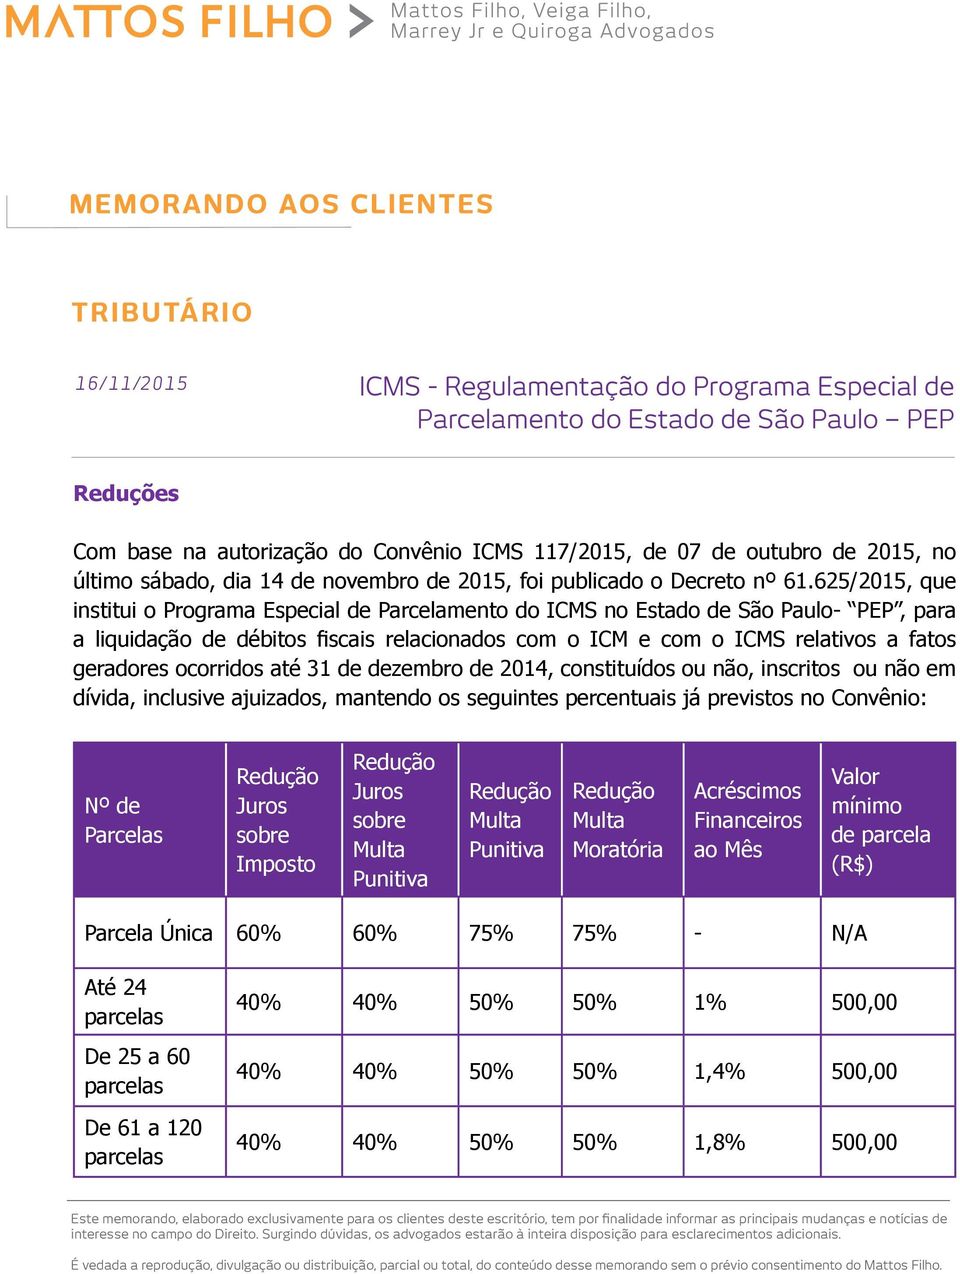 625/2015, que institui o Programa Especial de Parcelamento do ICMS no Estado de São Paulo- PEP, para a liquidação de débitos fiscais relacionados com o ICM e com o ICMS relativos a fatos geradores